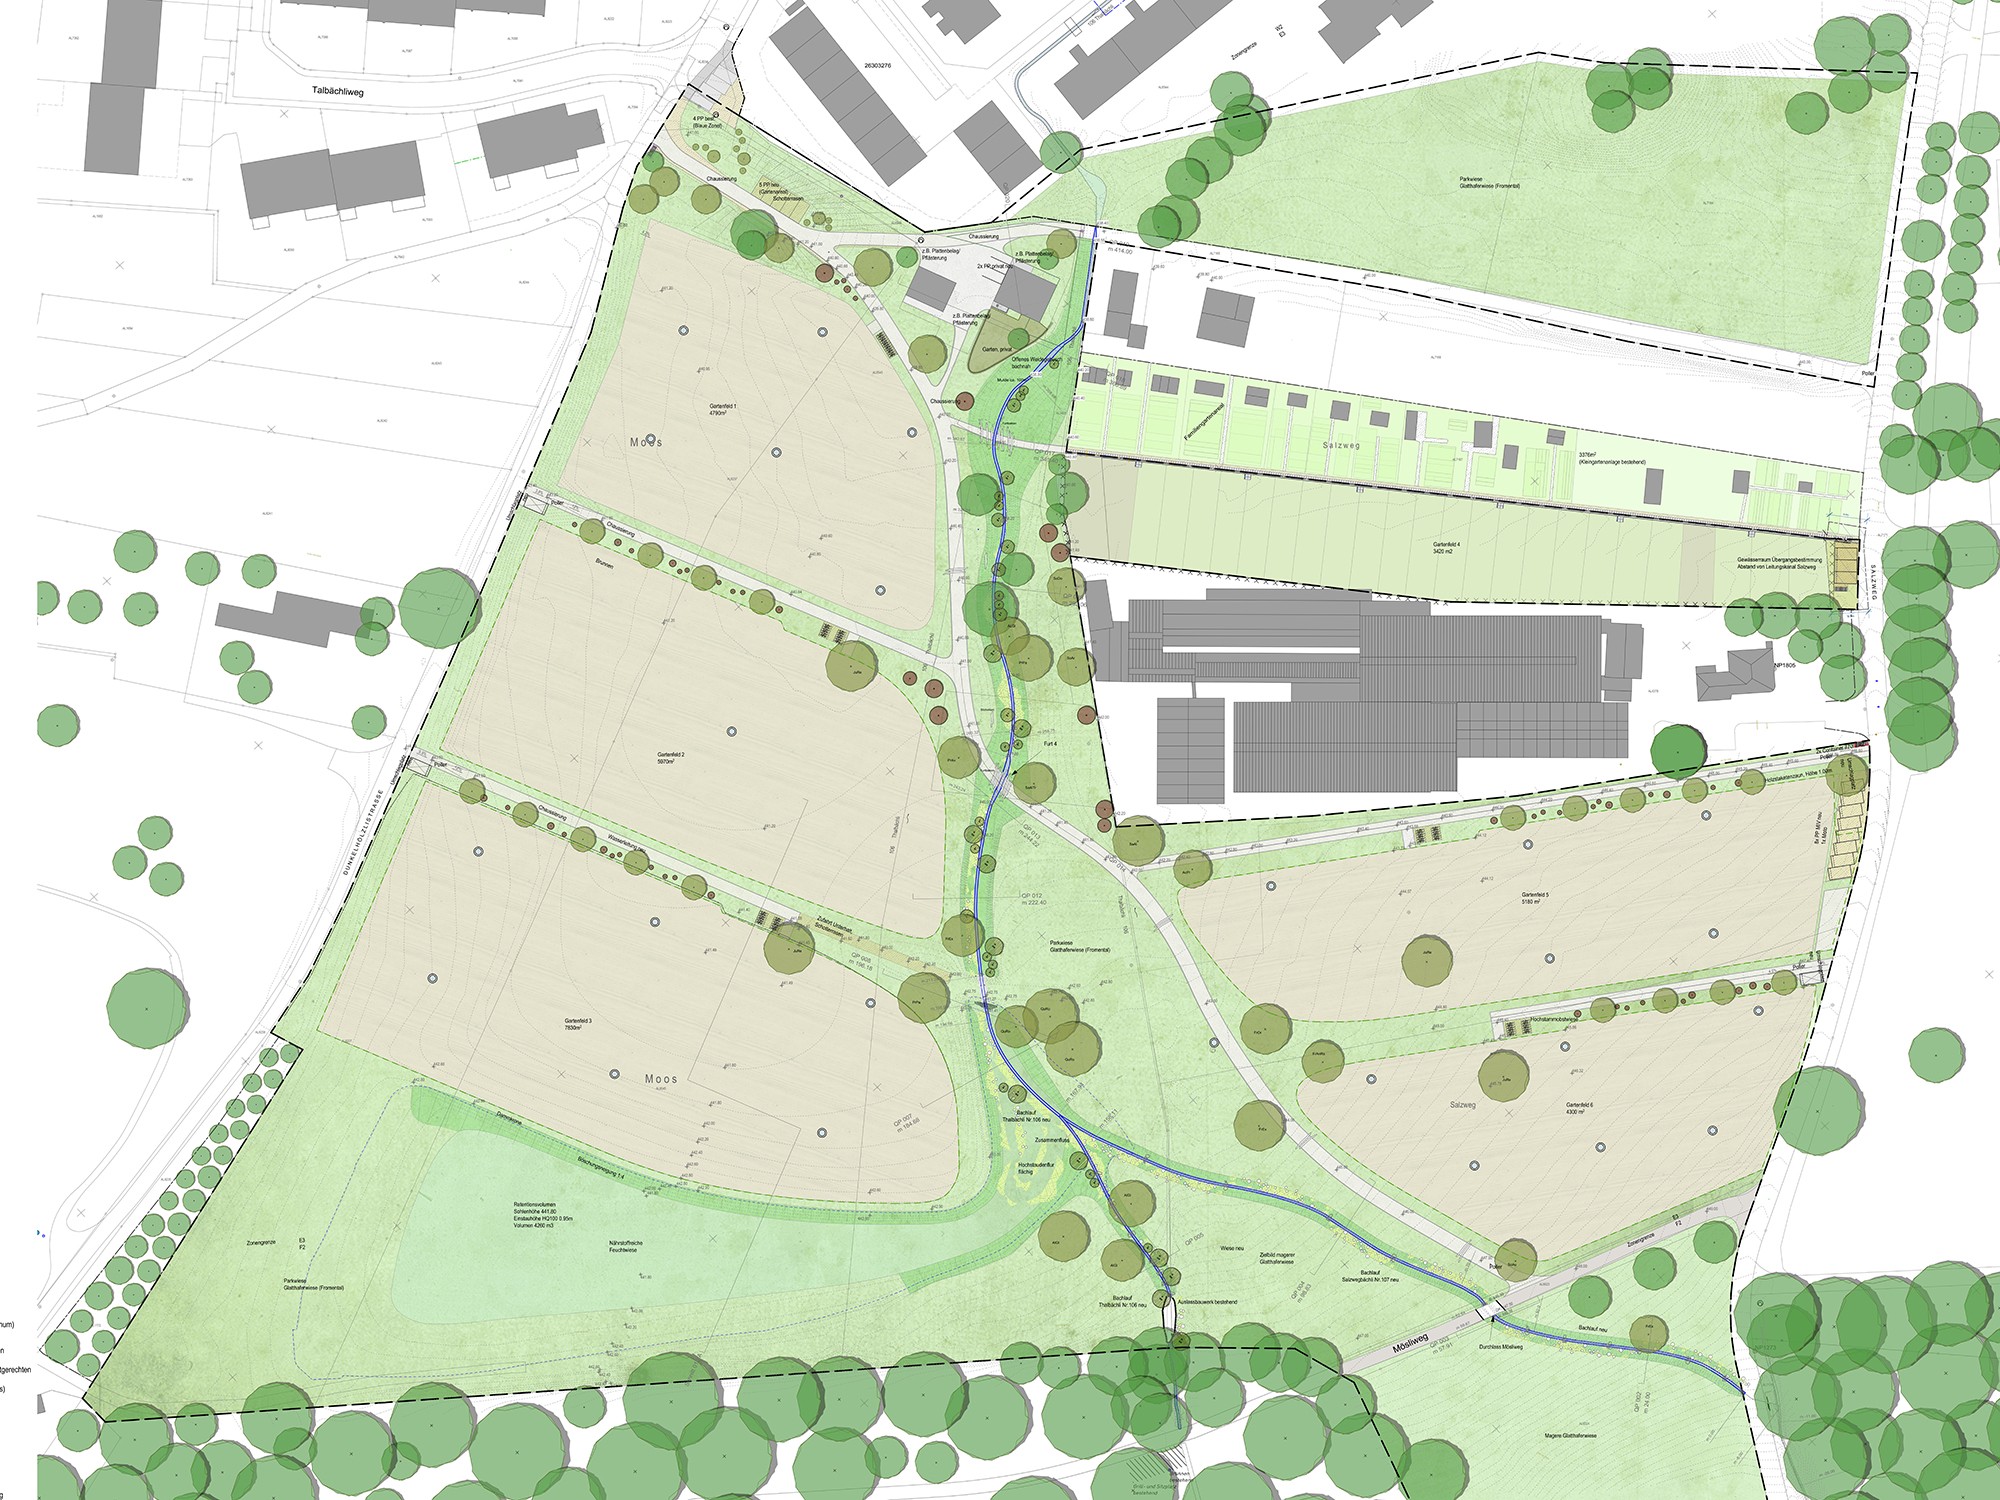 Neuer Bauprojektplan Gartenareal Dunkelhölzli, Stand 2020 (noch nicht bewilligt)